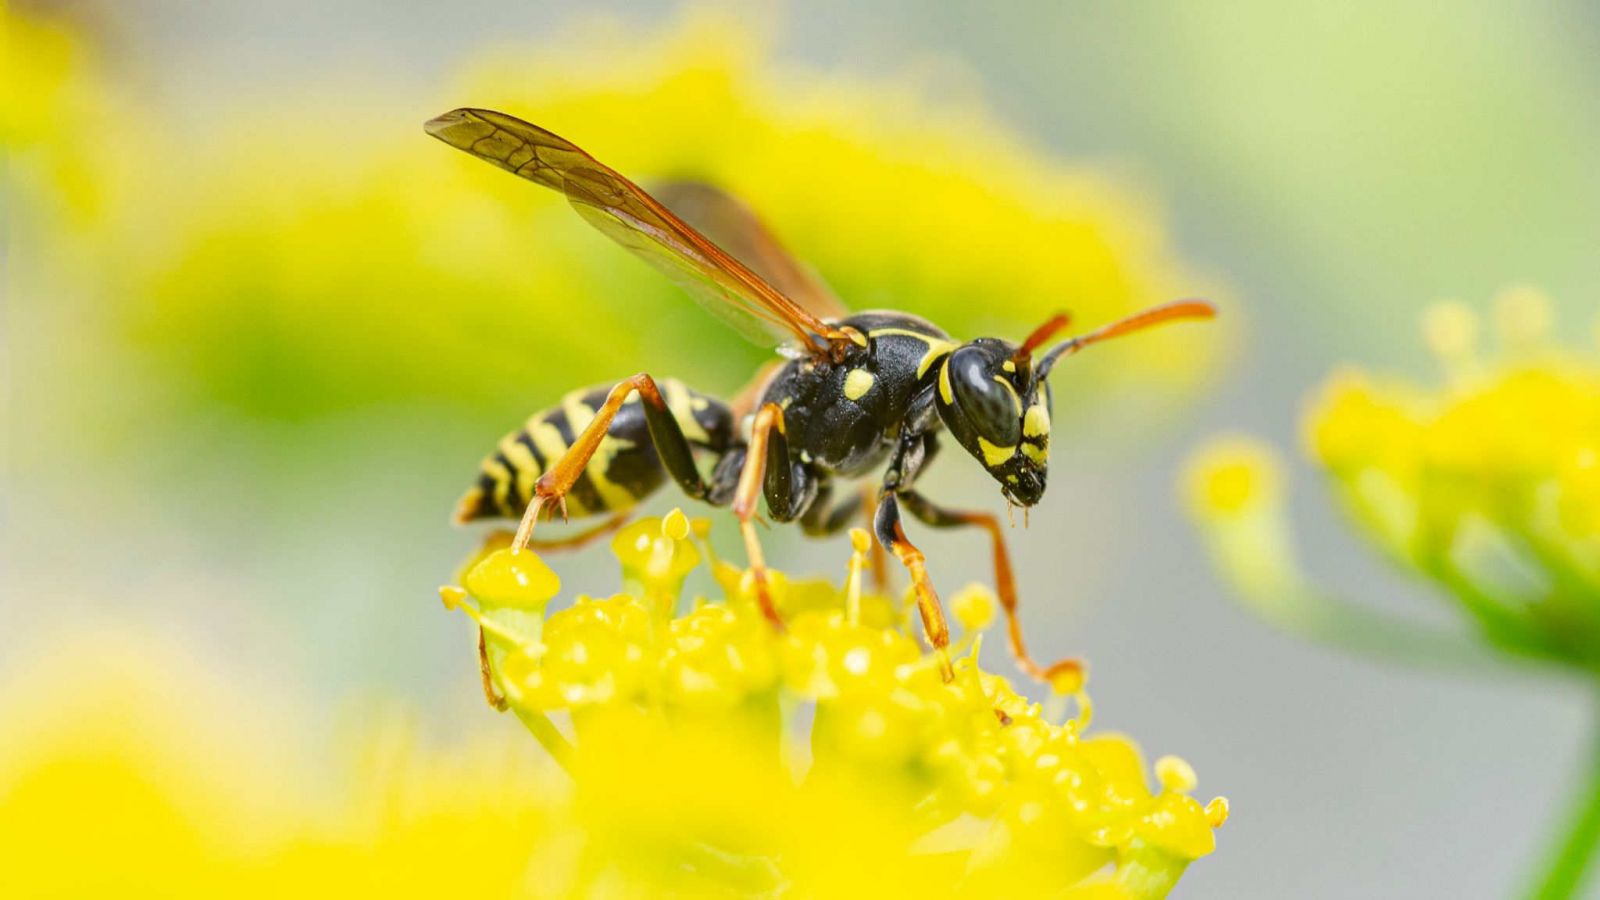 Ngộ độc ong đốt: Cách sơ cứu, điều trị và phòng tránh - Nhà thuốc ...